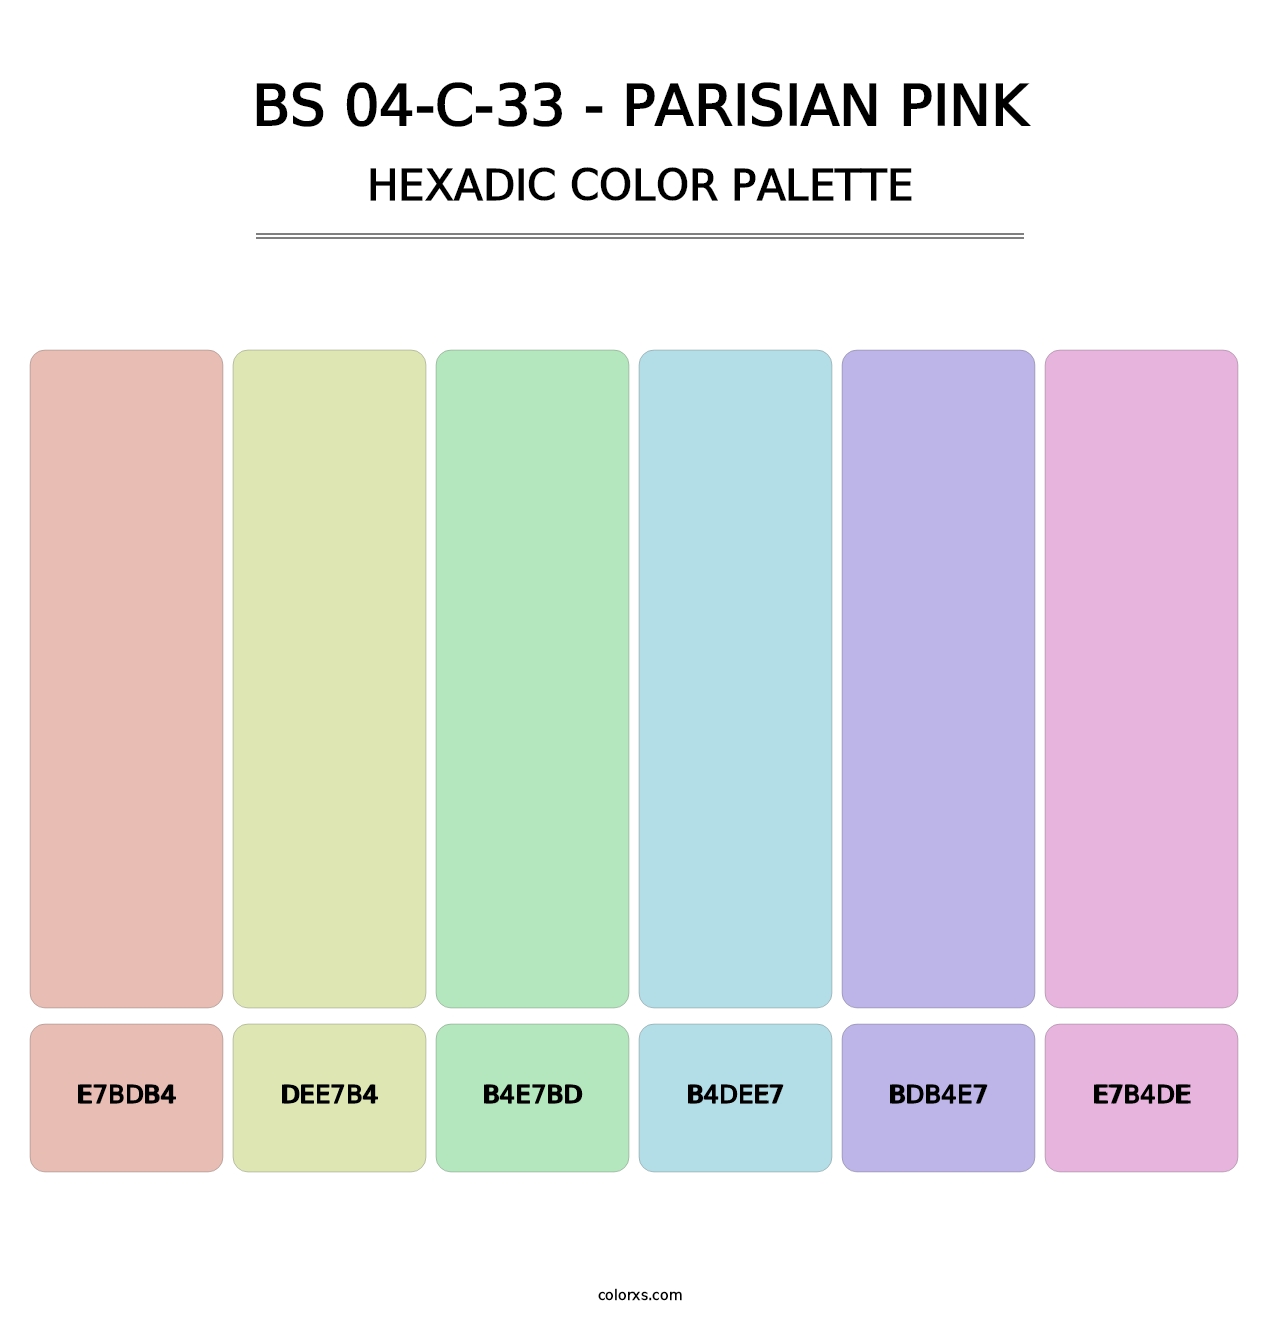 BS 04-C-33 - Parisian Pink - Hexadic Color Palette